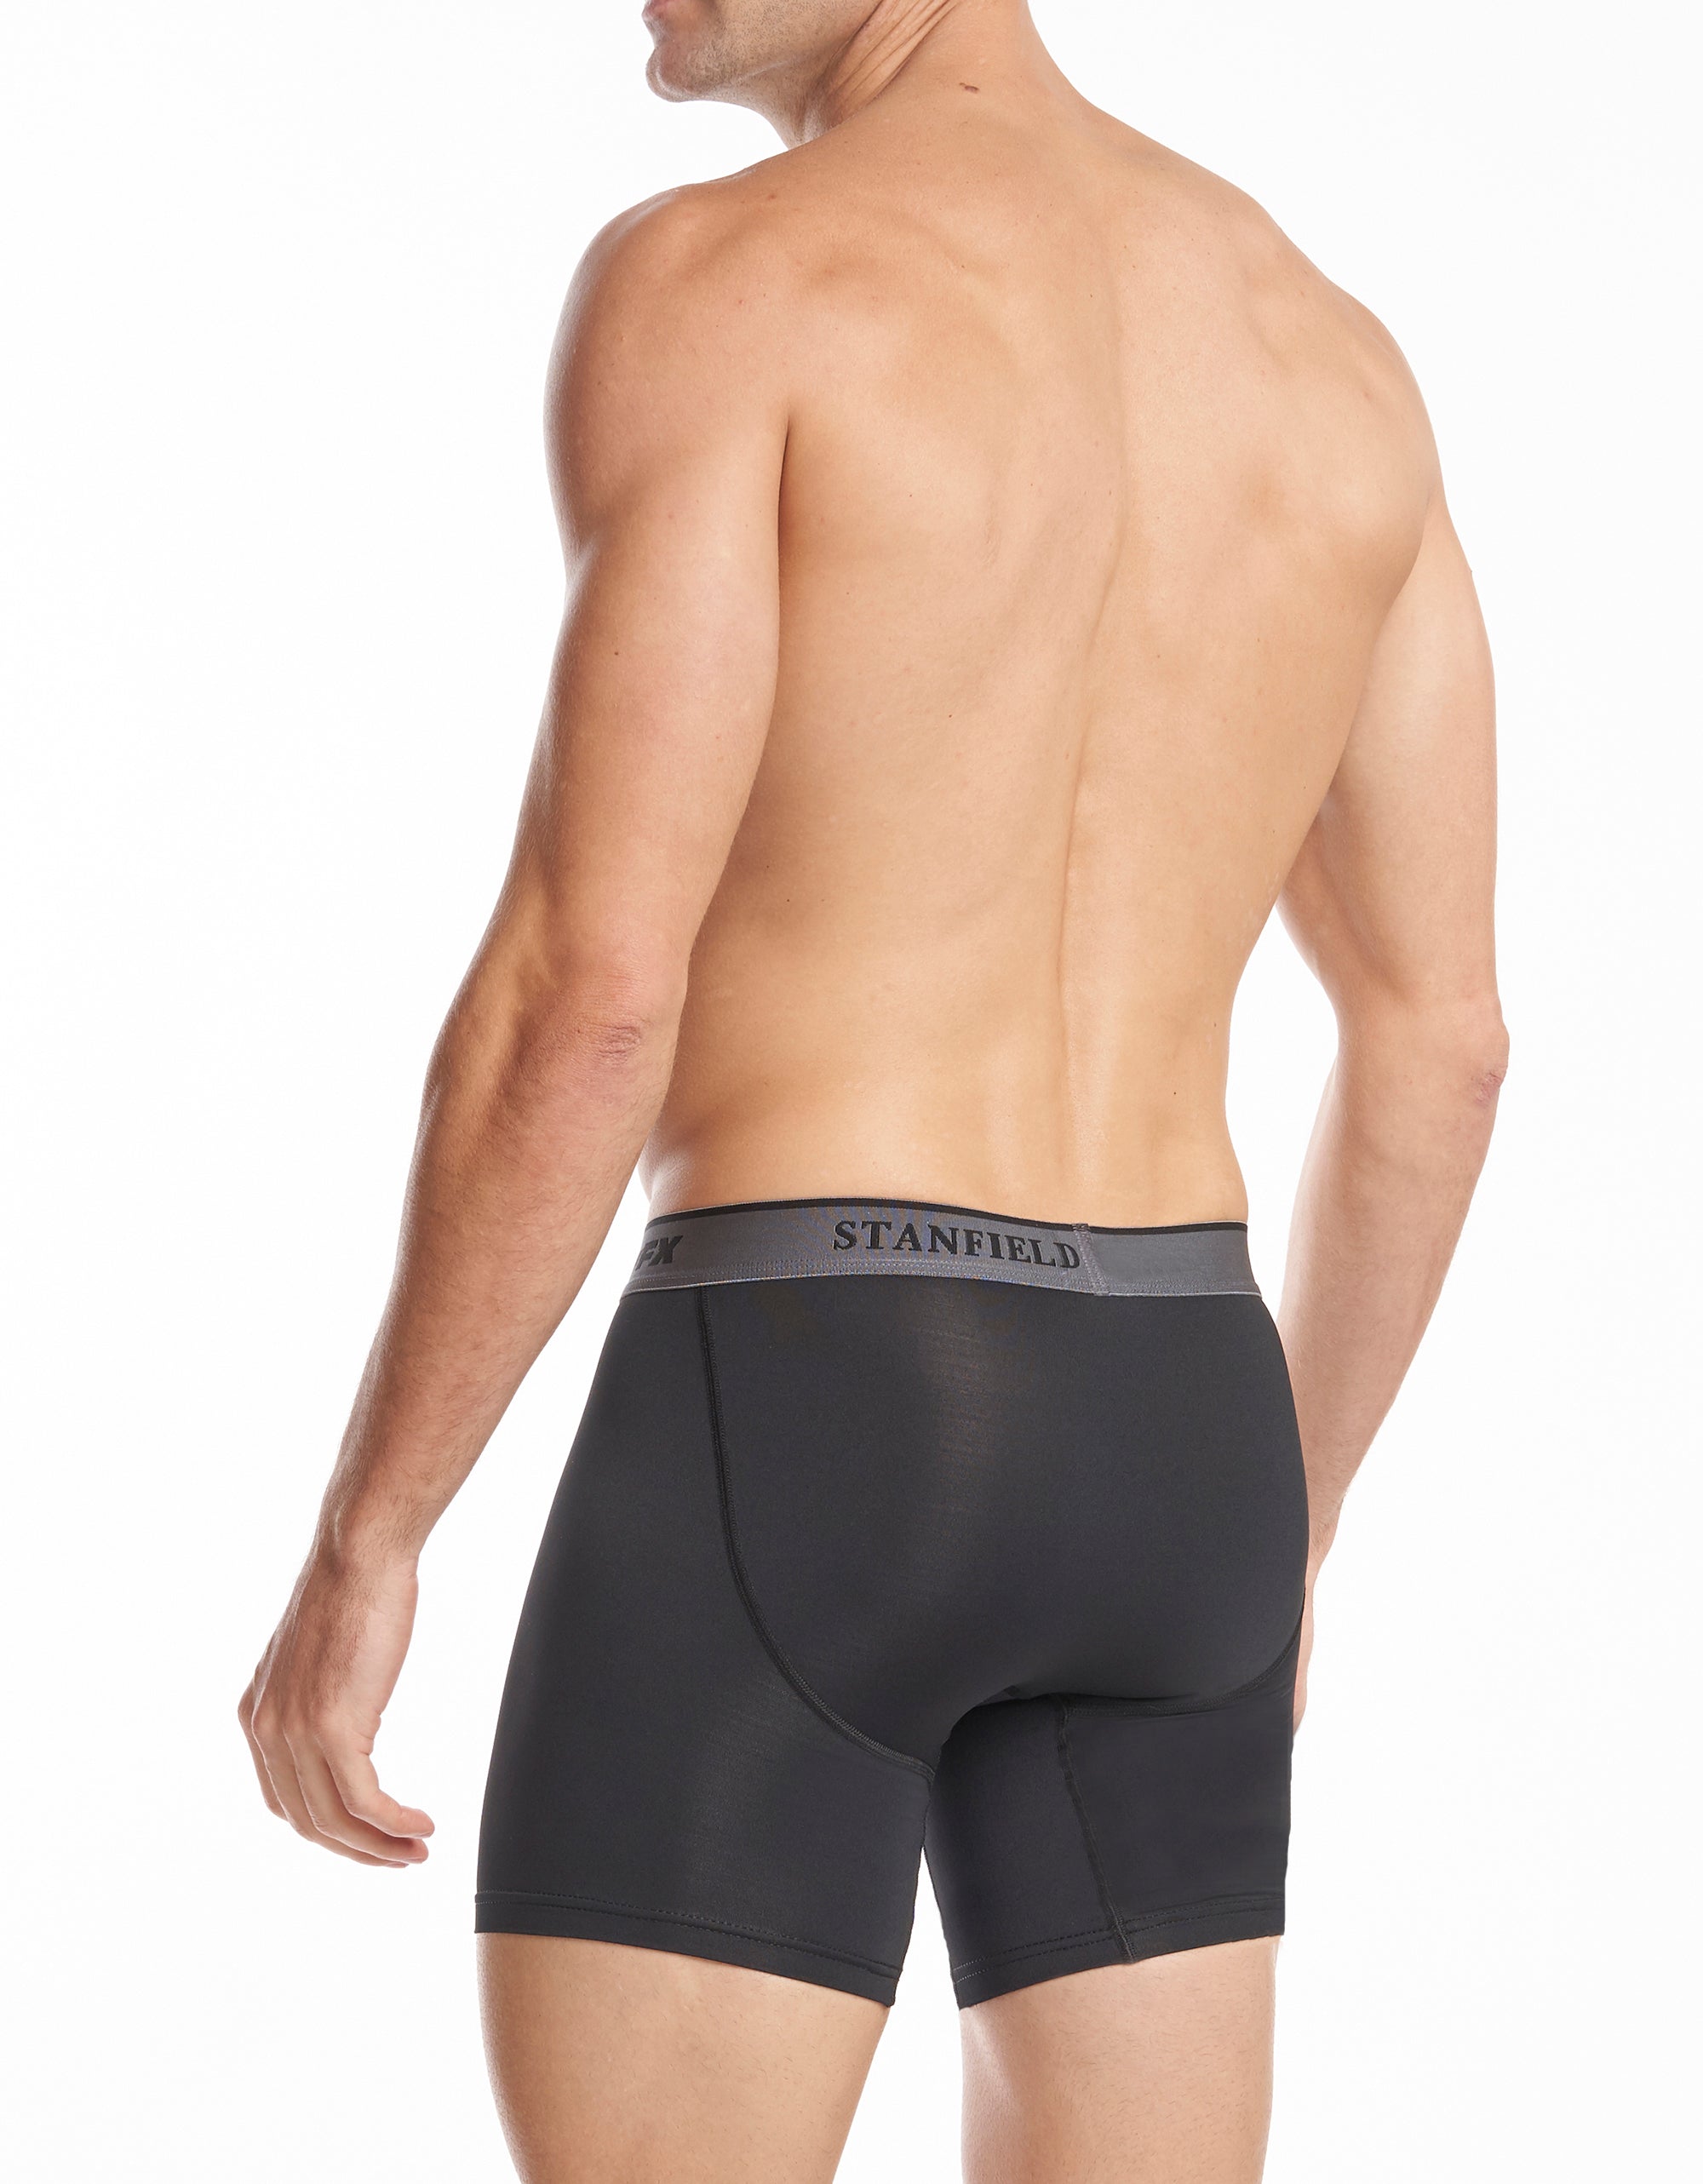  Stanfield's Men's 6-Pack Cotton Brief Underwear Black